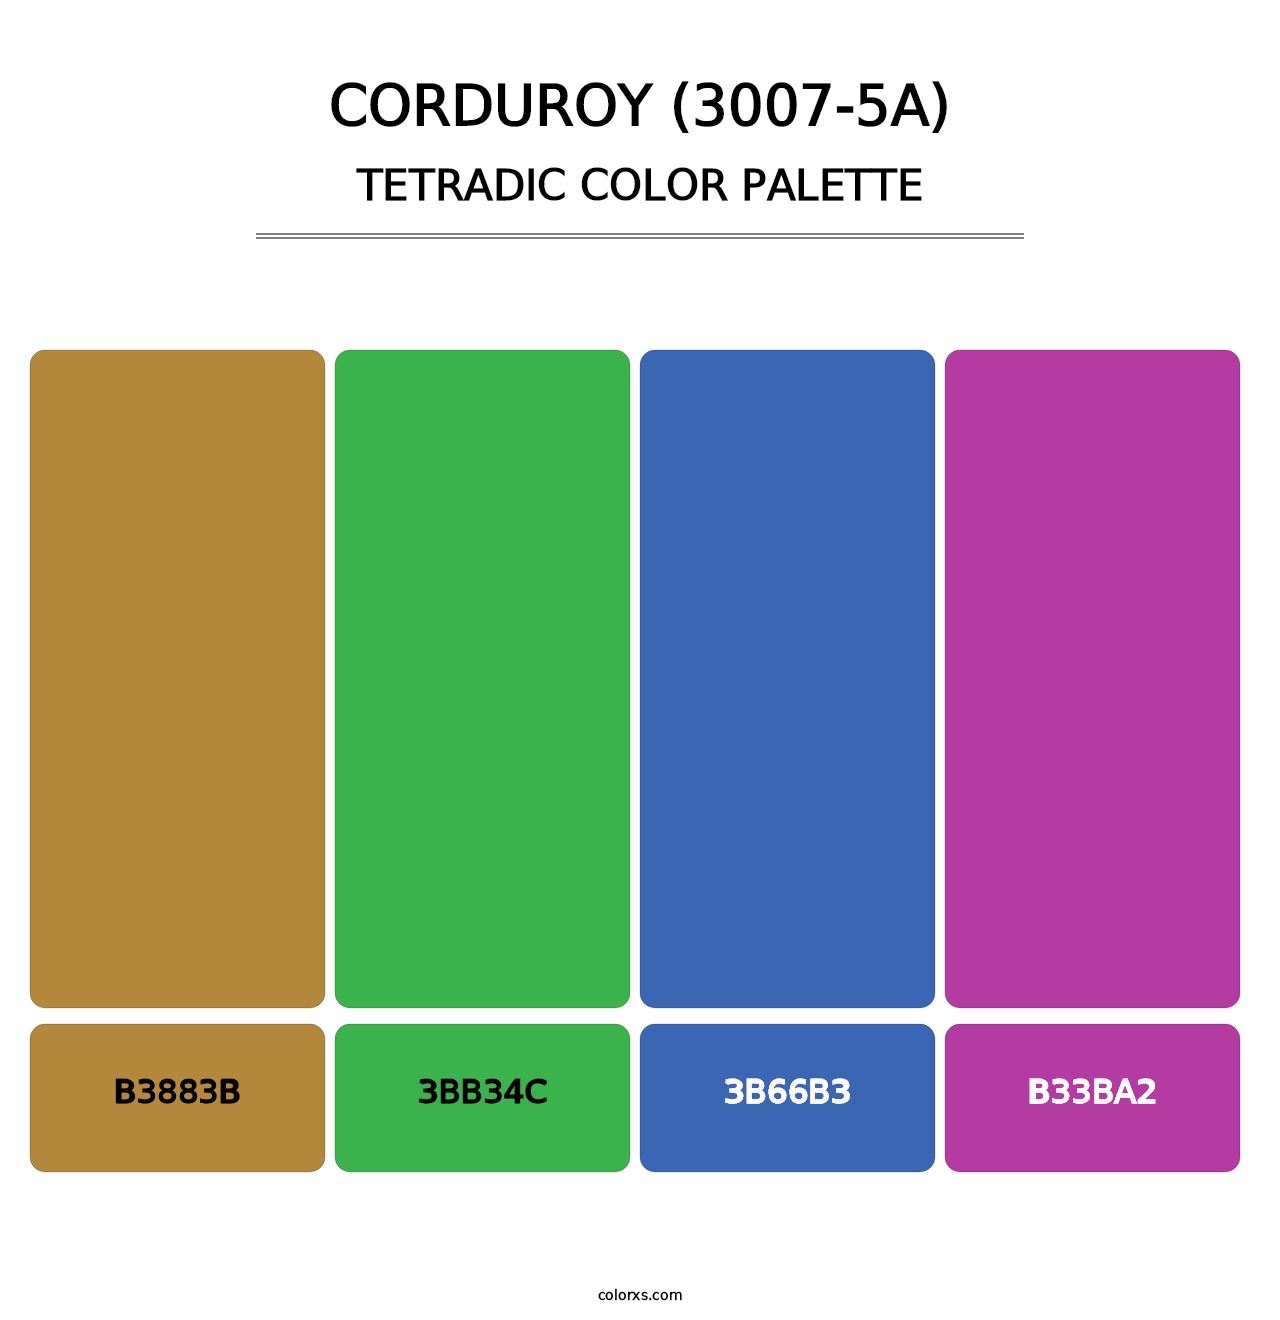 Corduroy (3007-5A) - Tetradic Color Palette